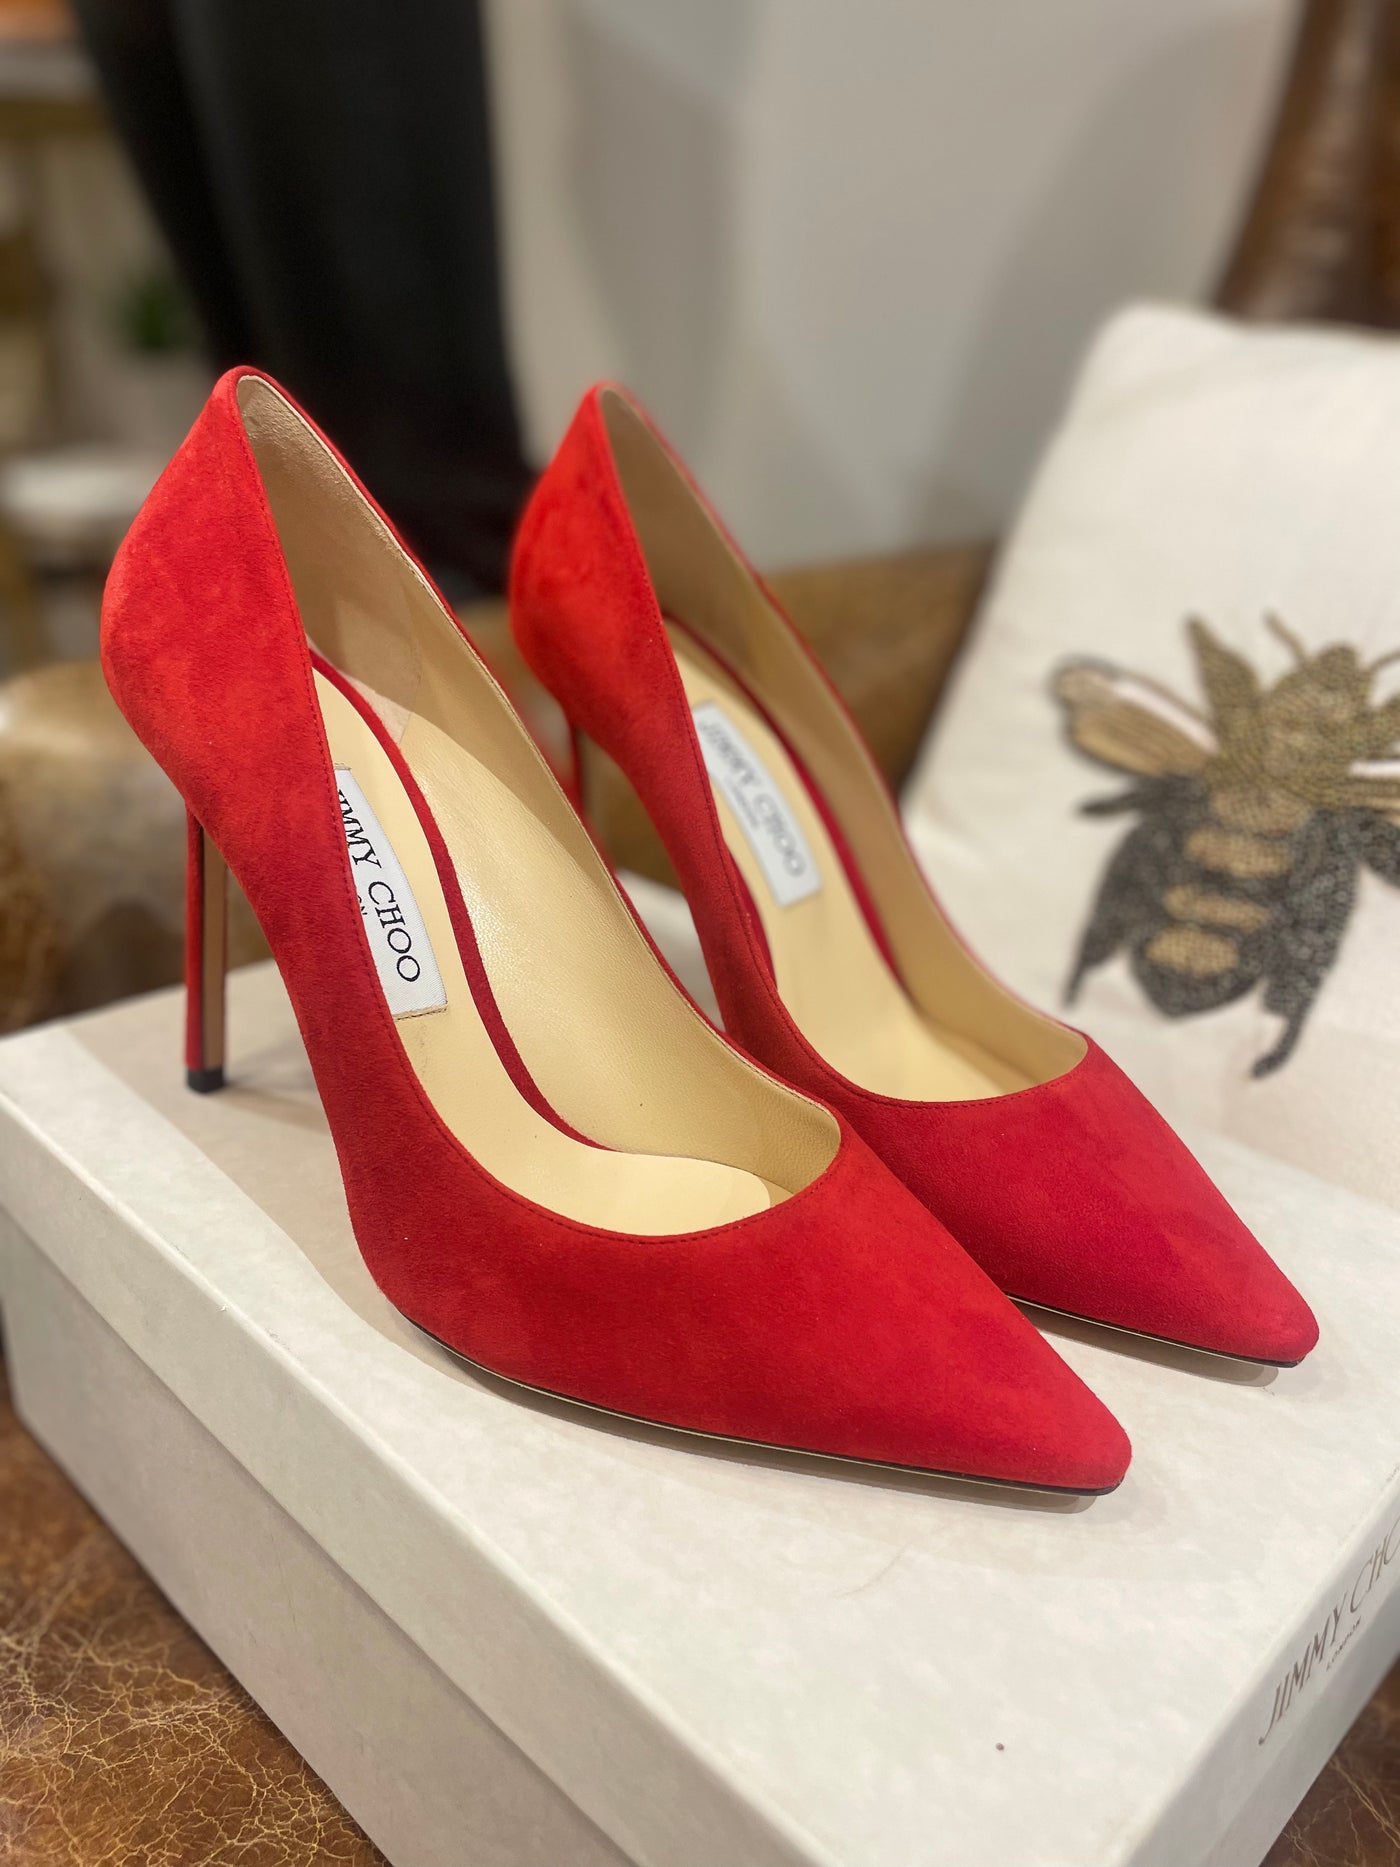 Brand new Jimmy Choo red suede heels 39.5